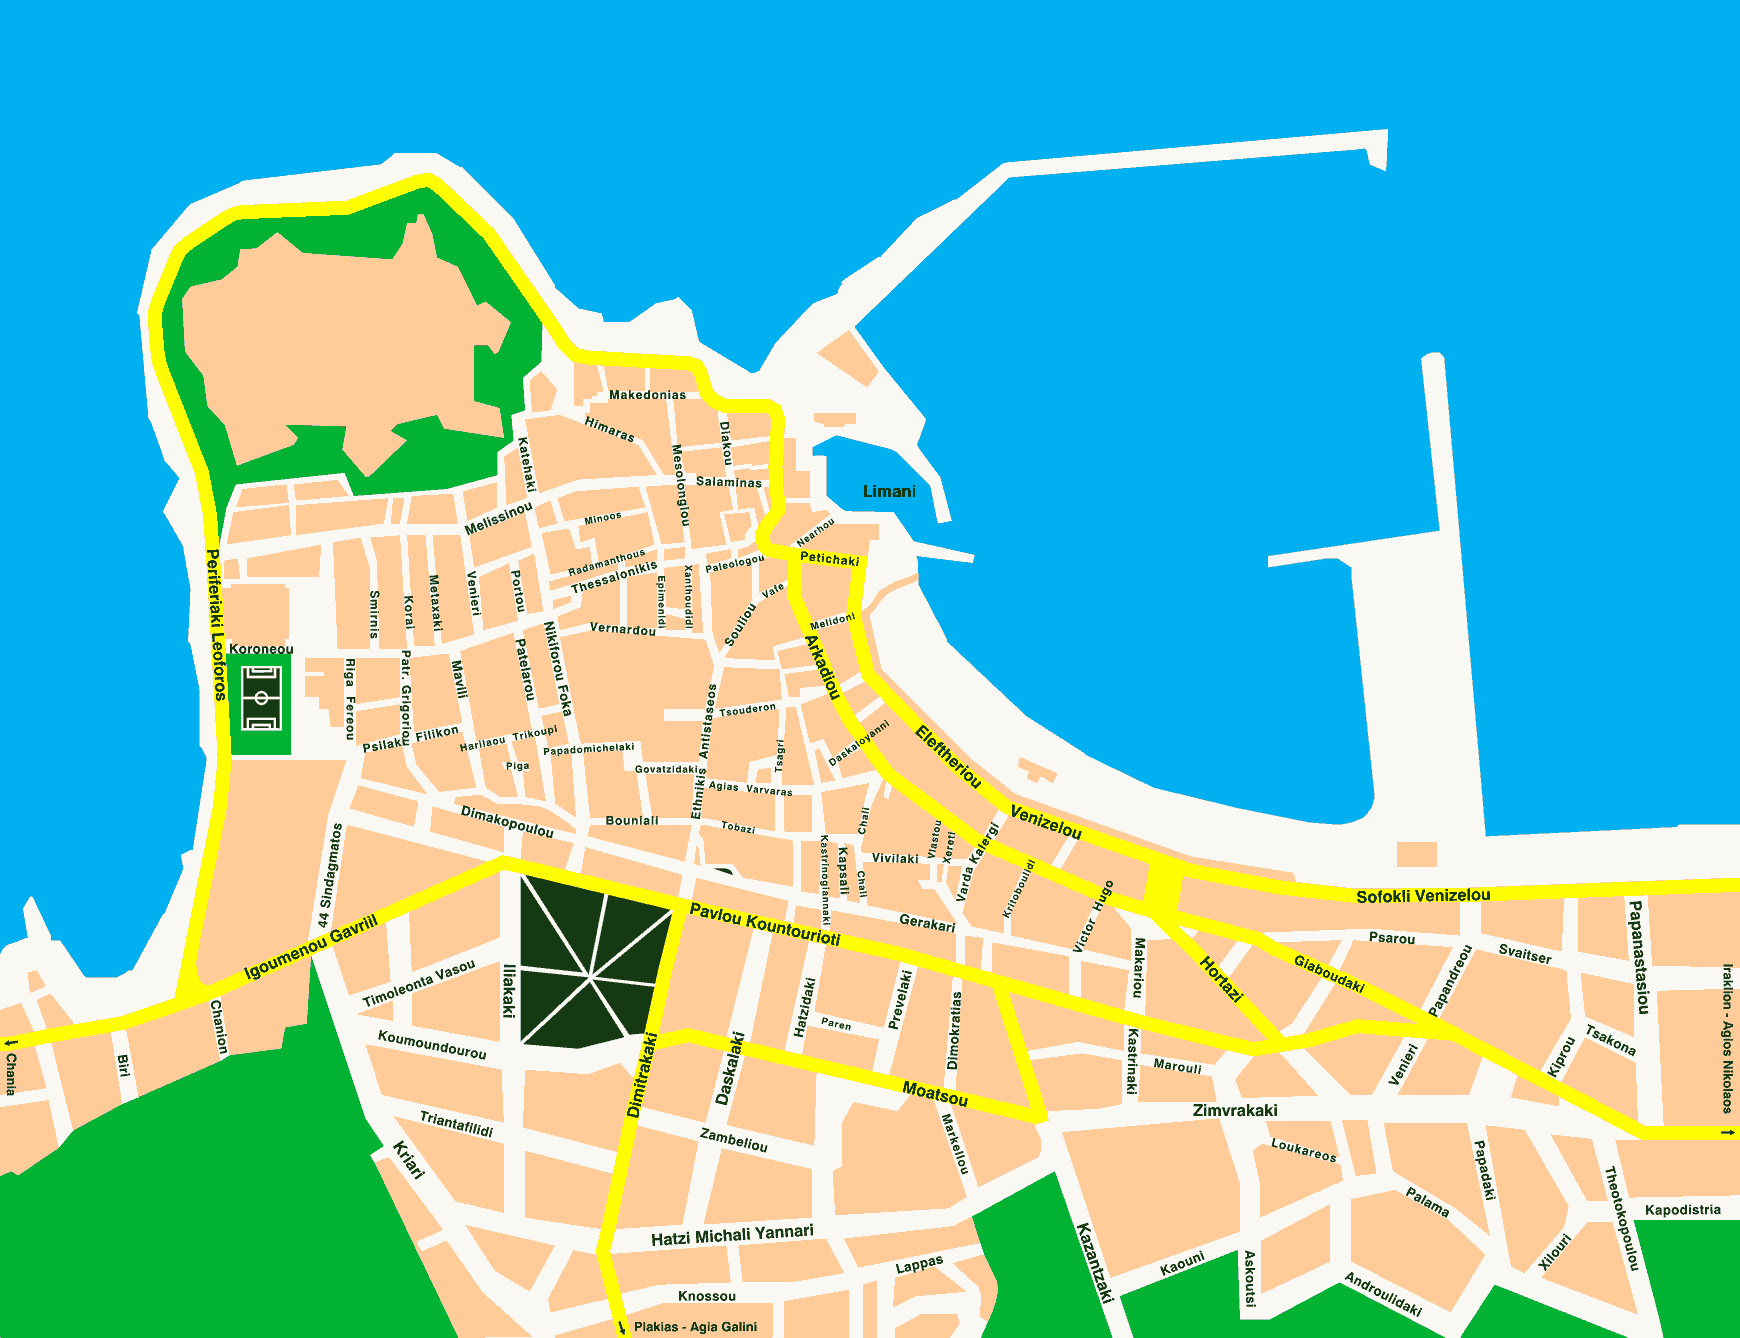 Mappa della città di Rethimnon